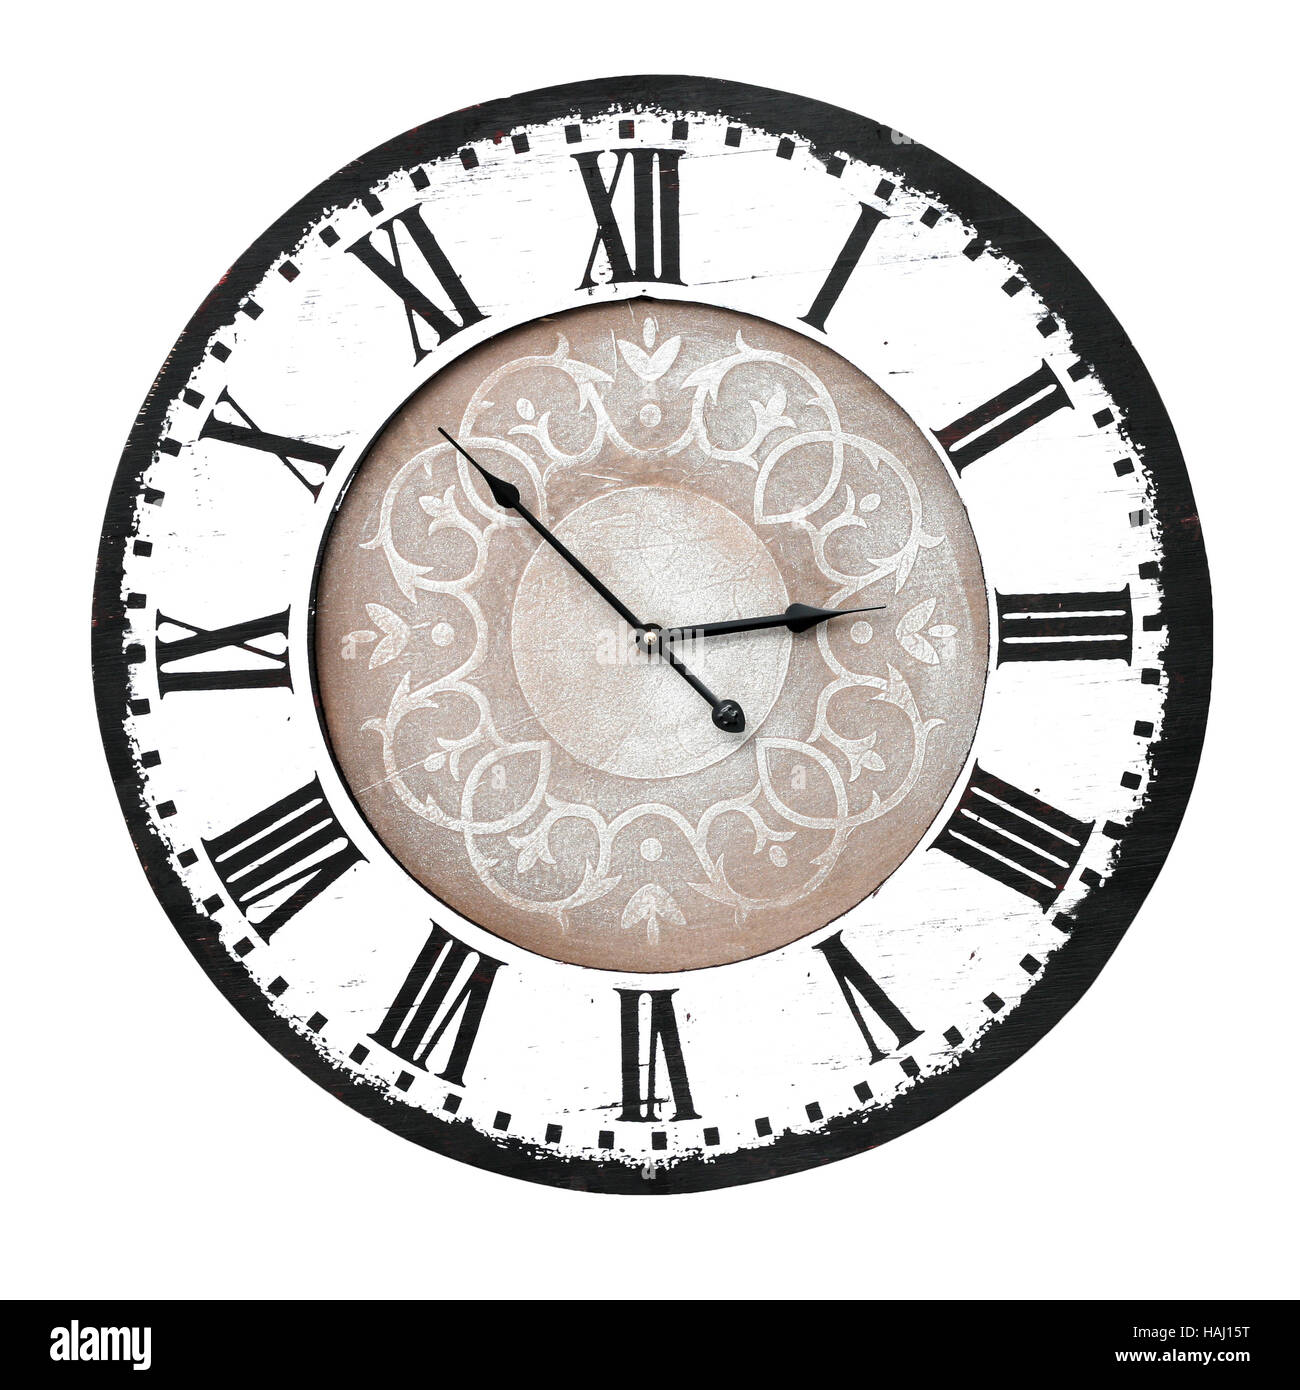 https://c8.alamy.com/compes/haj15t/vintage-reloj-de-pared-con-numeros-romanos-haj15t.jpg